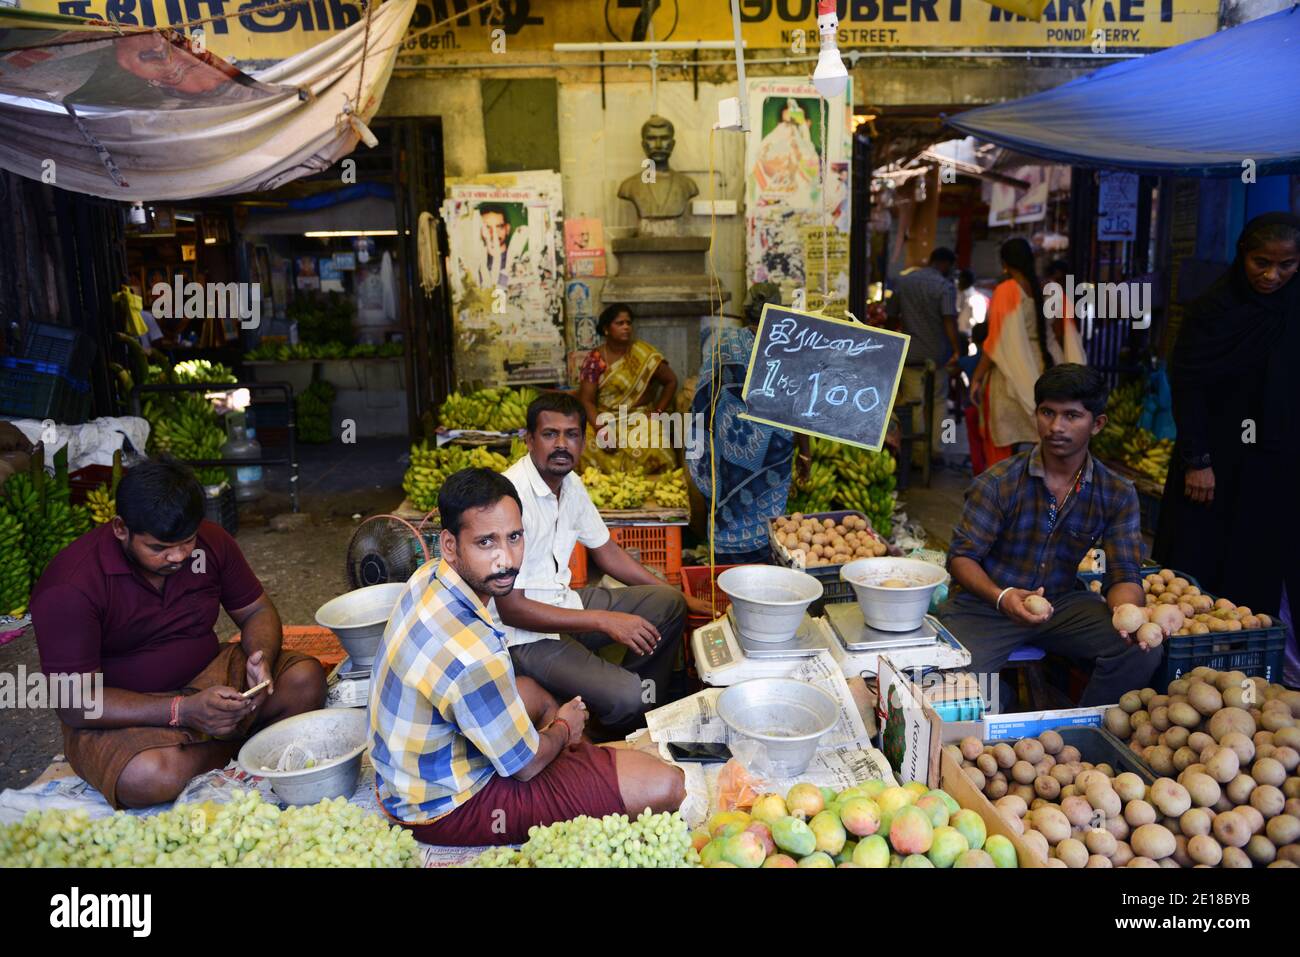 A fruit vendor in Pondicherry's White Town, India. Stock Photo